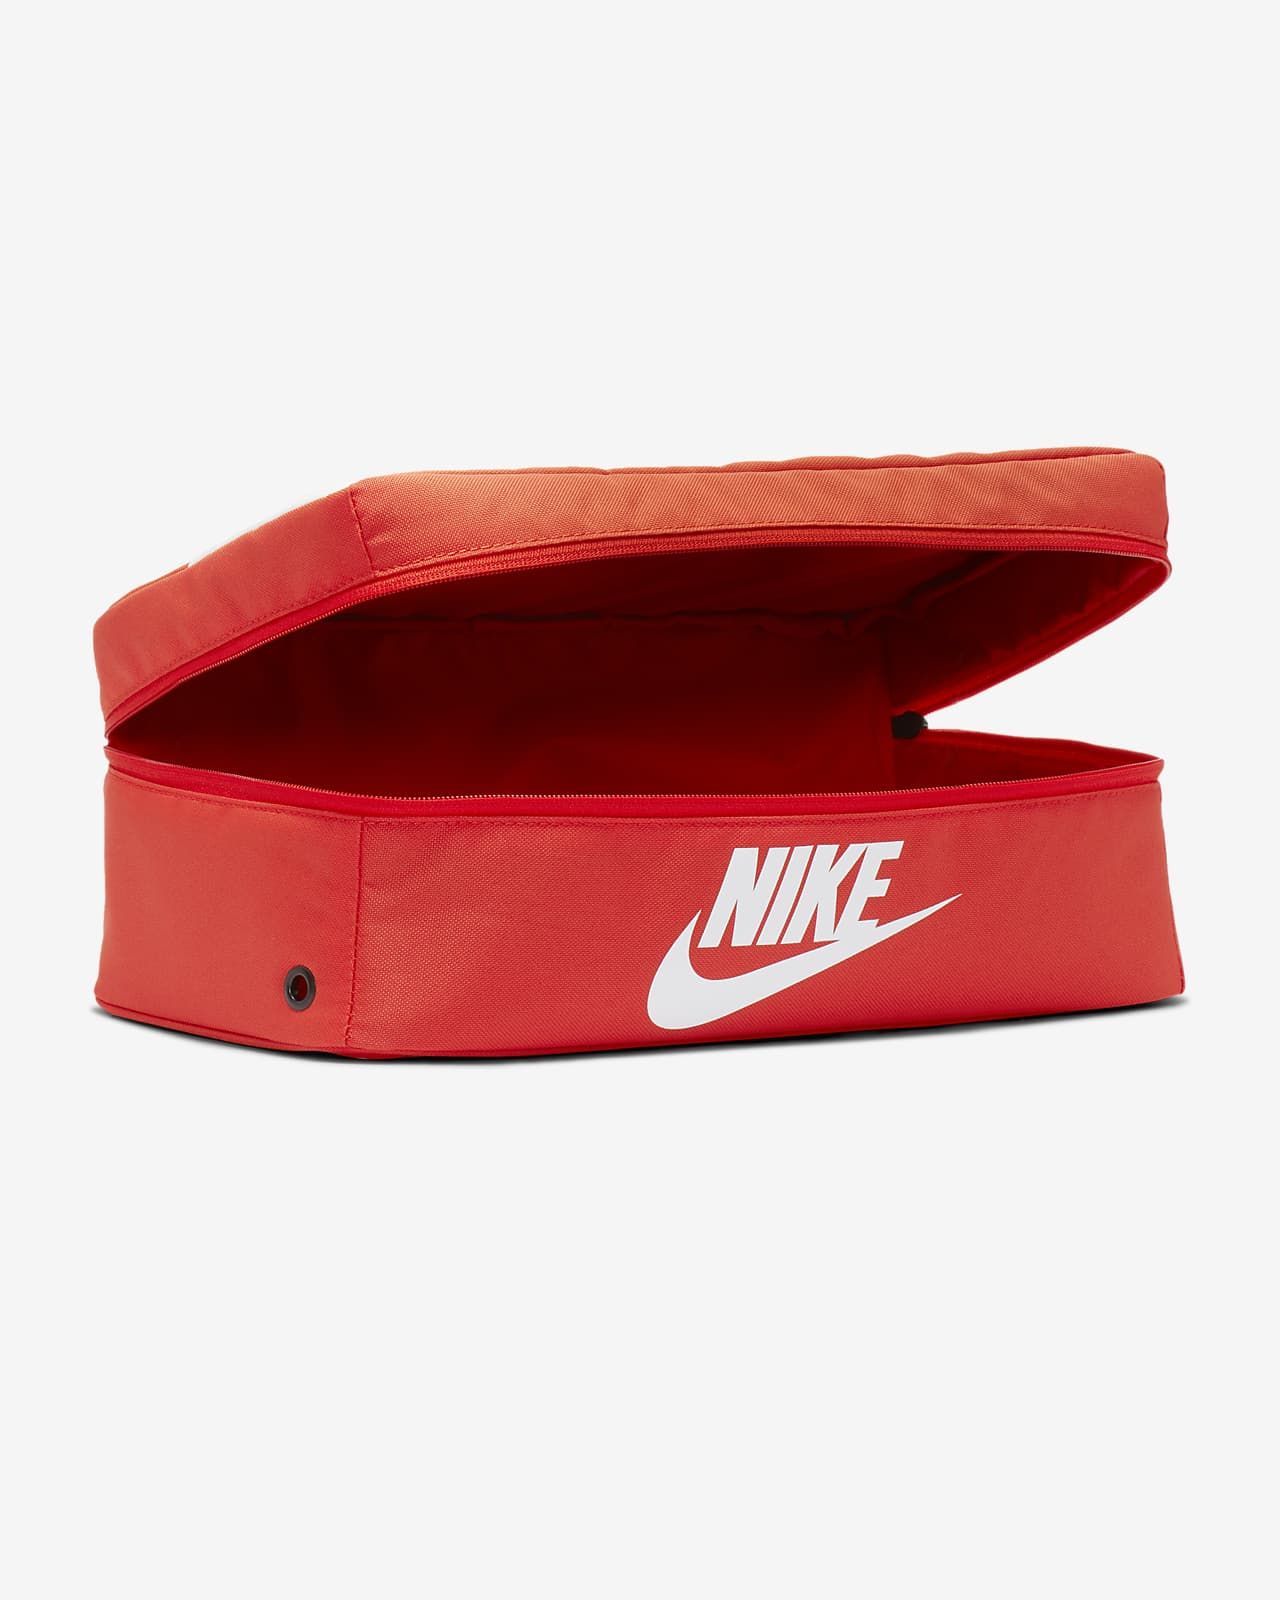 Nike Shoebox | Nike (US)